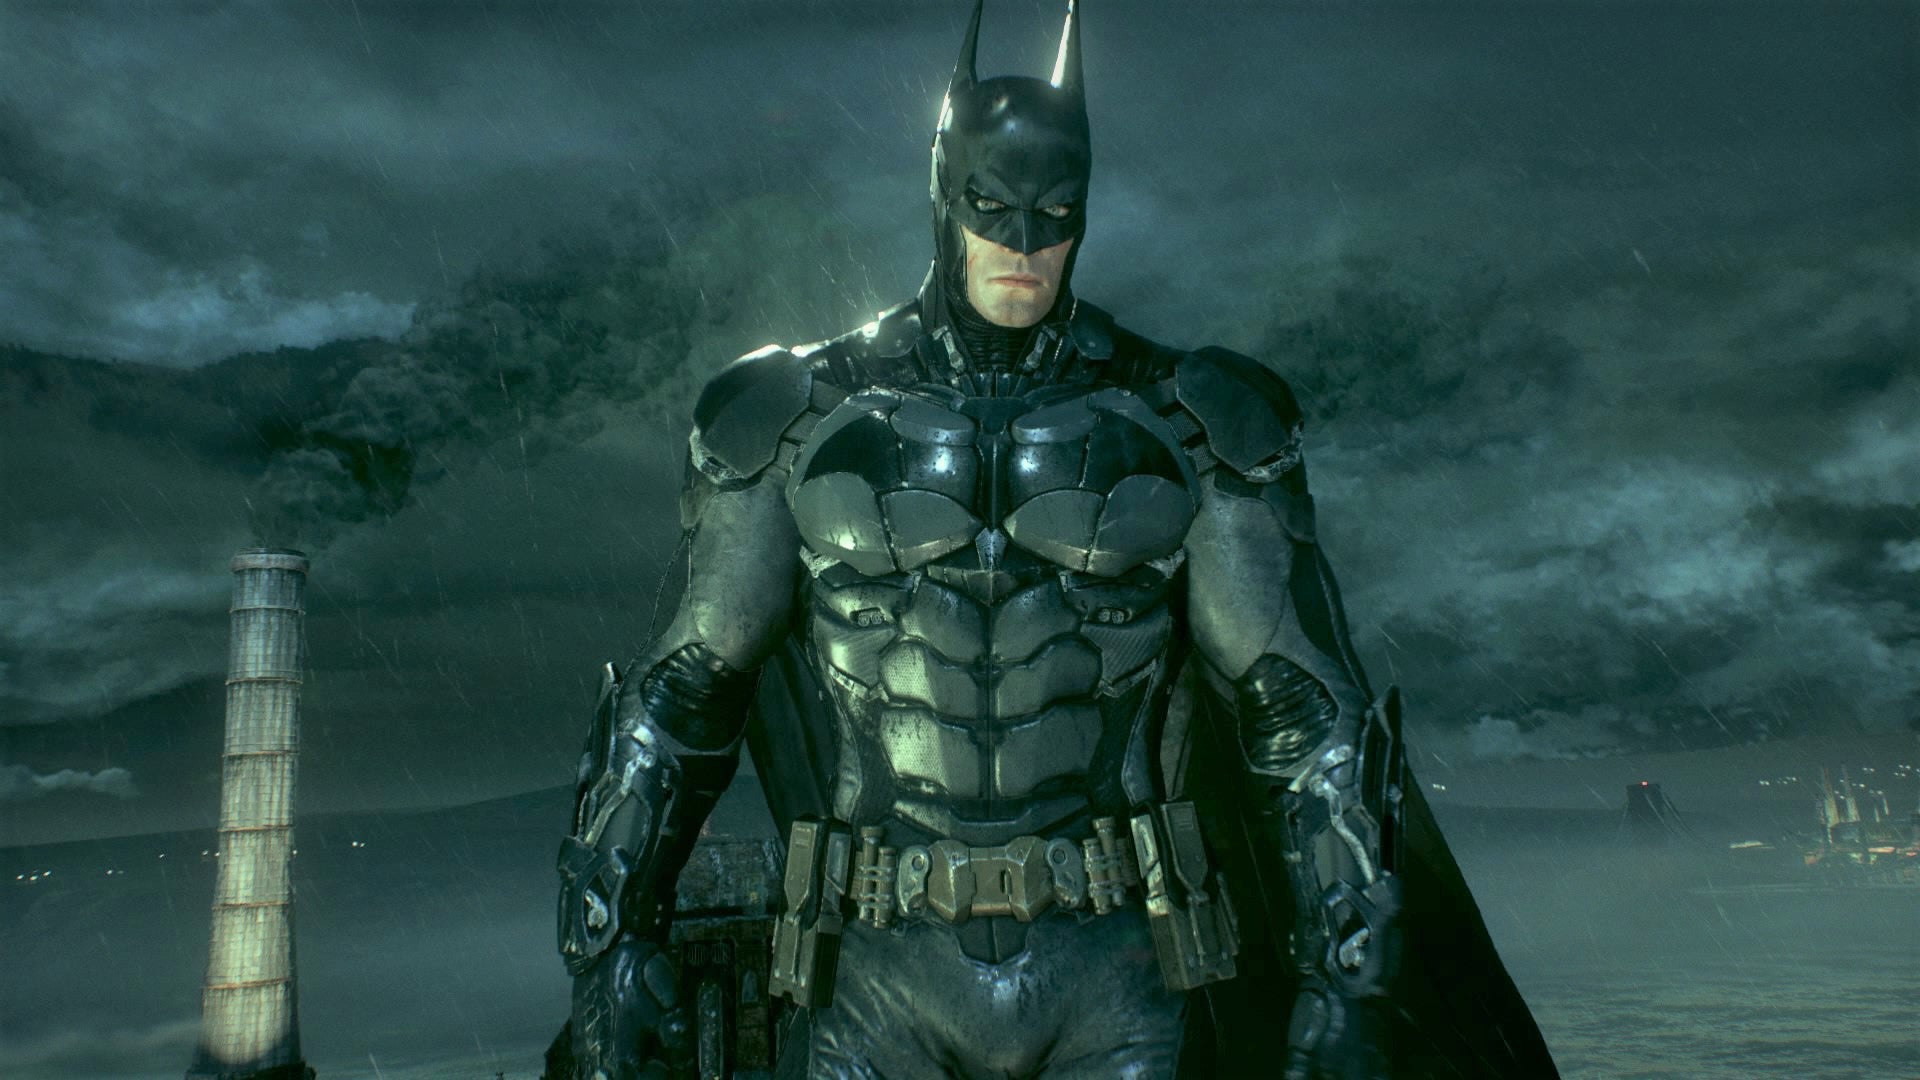 Obrazki dla Batman: Arkham Knight na Epic Games Store bez Denuvo. Sprawdzono wpływ na wydajność